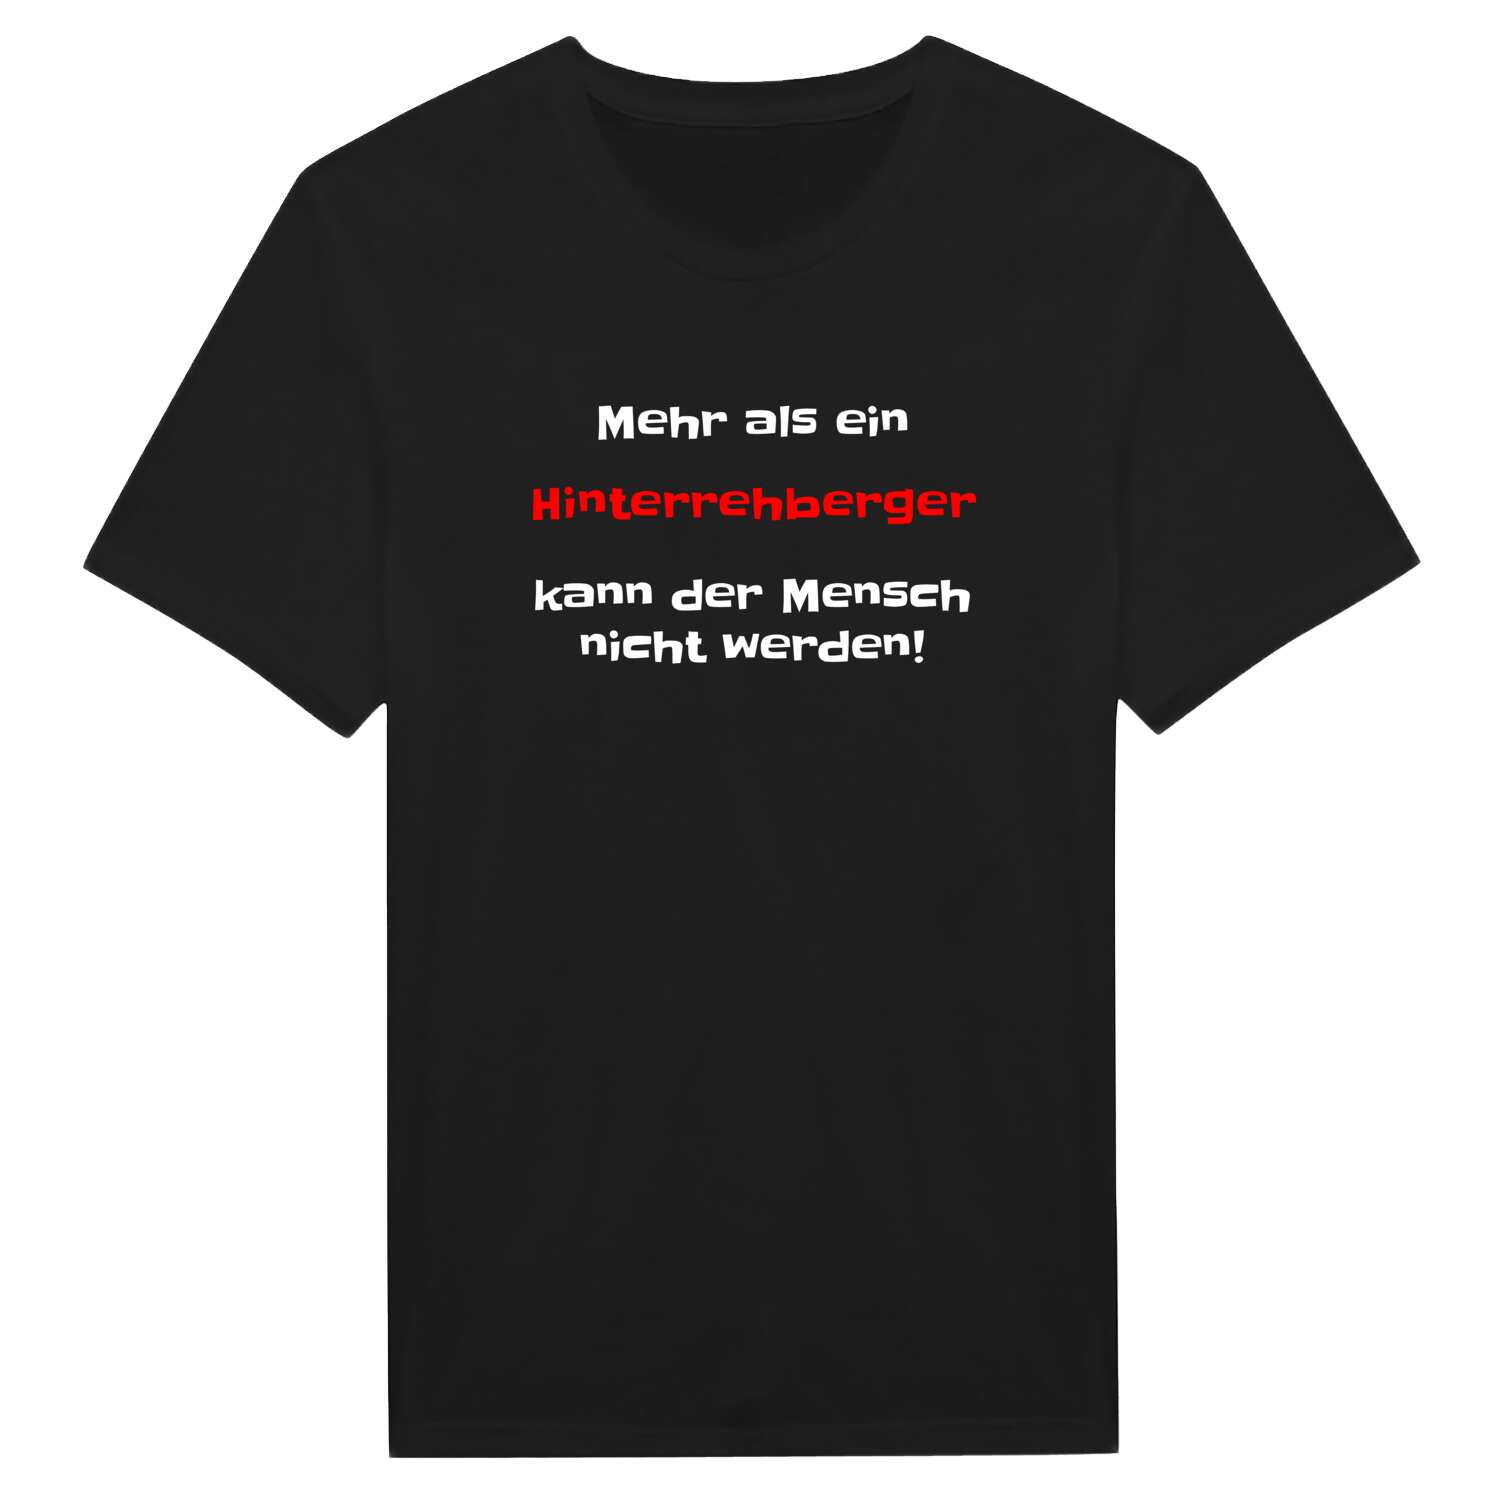 Hinterrehberg T-Shirt »Mehr als ein«